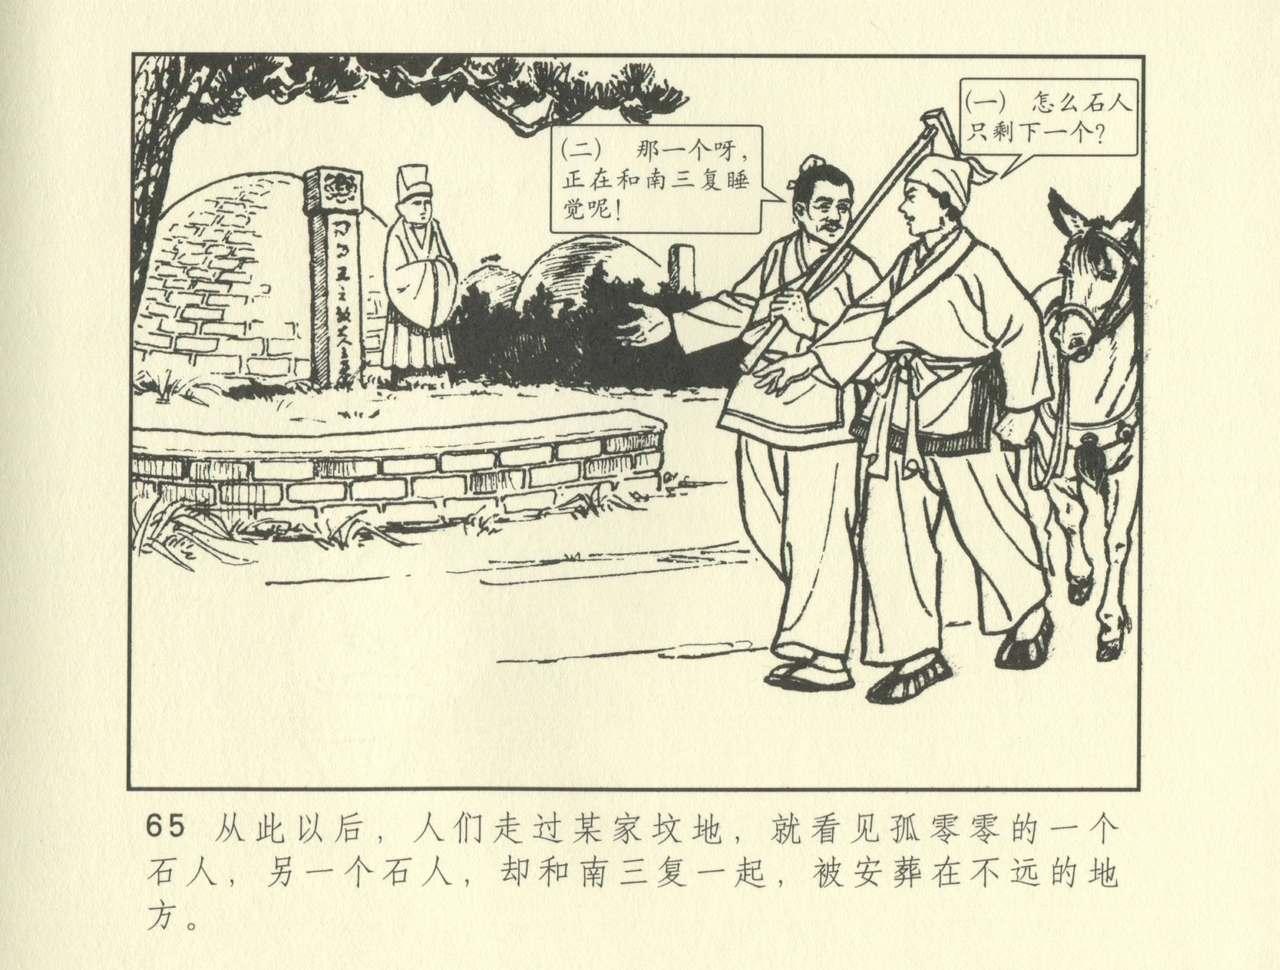 聊斋志异 张玮等绘 天津人民美术出版社 卷二十一 ~ 三十 274